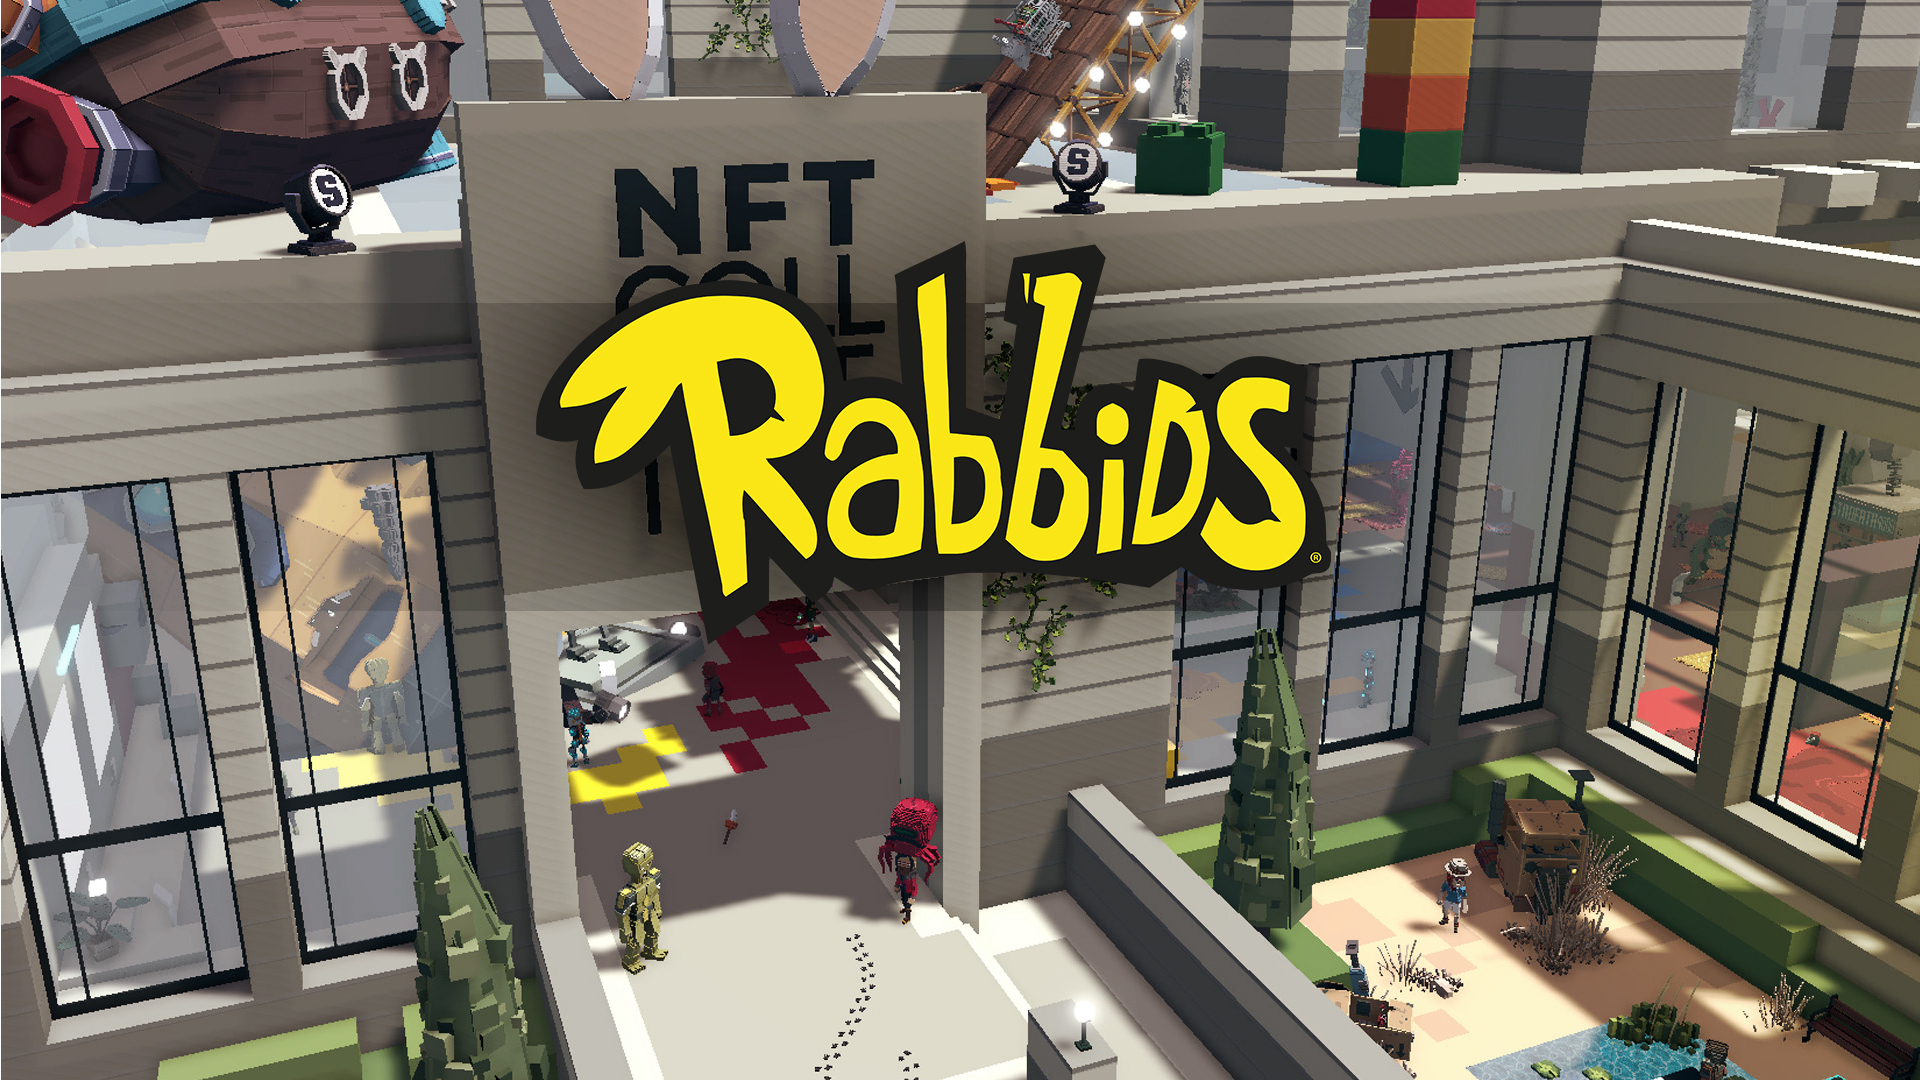 Reddit Rakan Kongsi Dengan Ubisoft Untuk Menawarkan NFT Rabbid Percuma